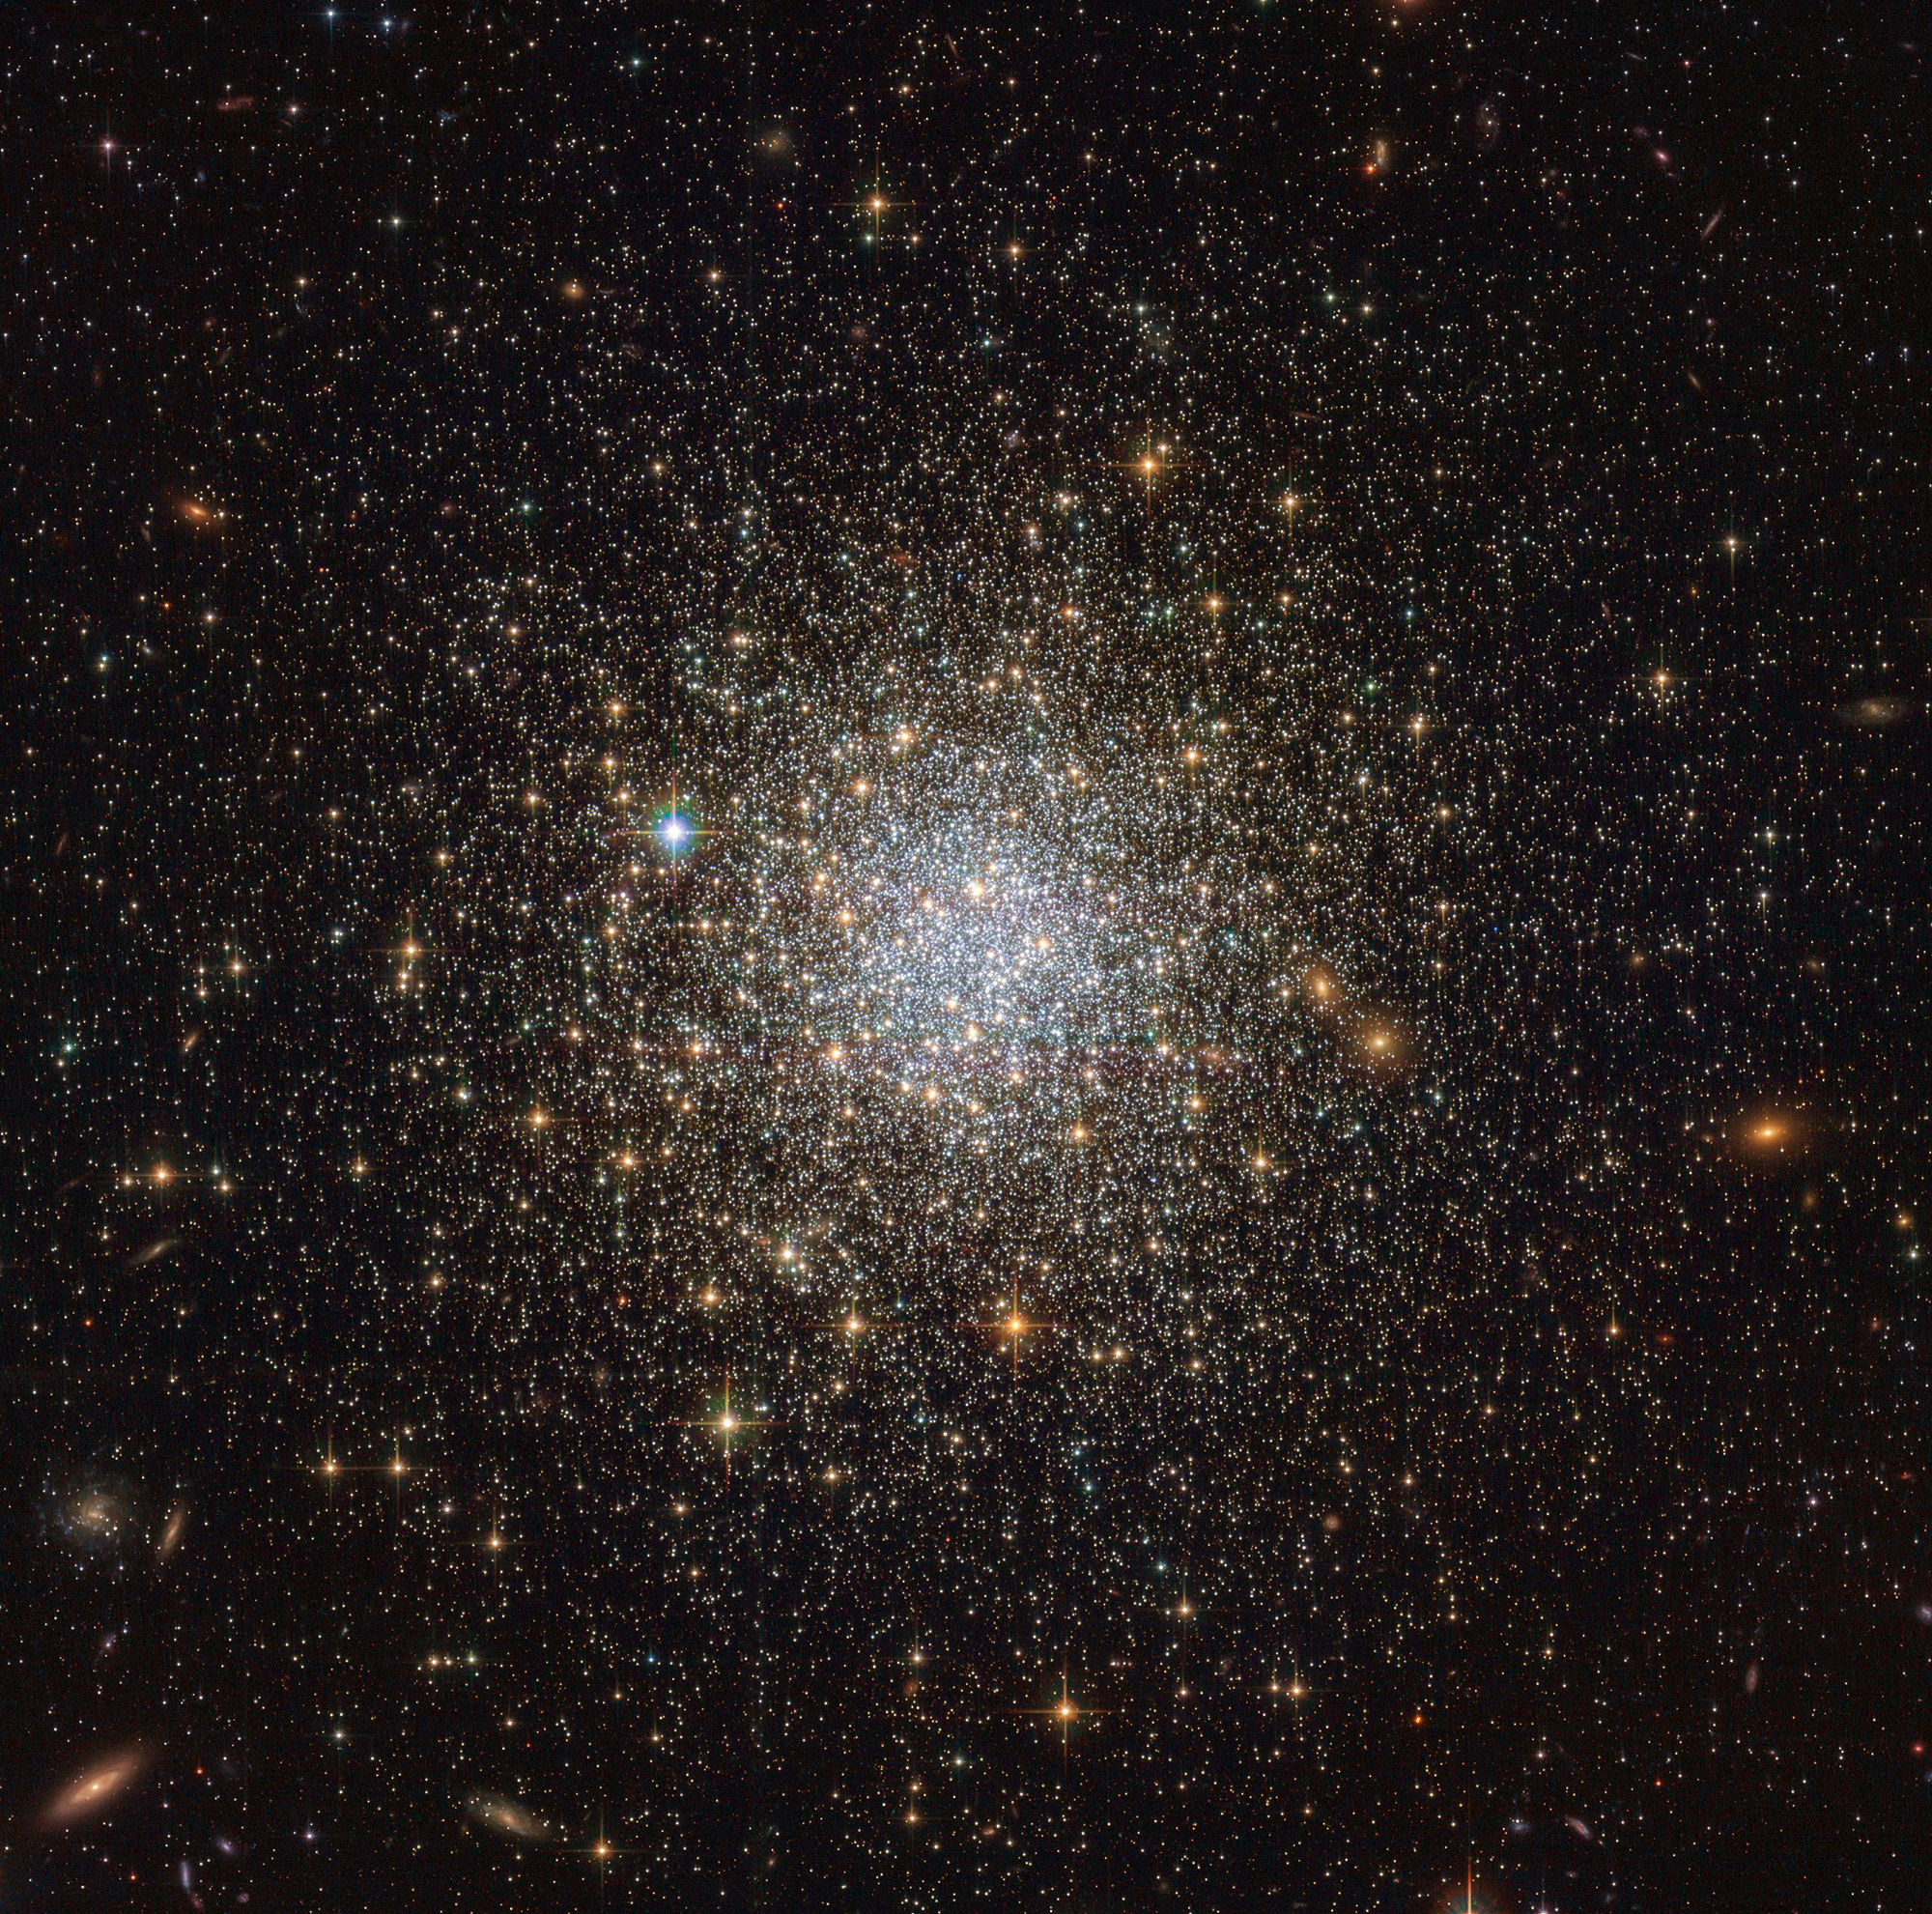 The spectacular globular cluster NGC 1466. Credit: ESA/Hubble & NASA